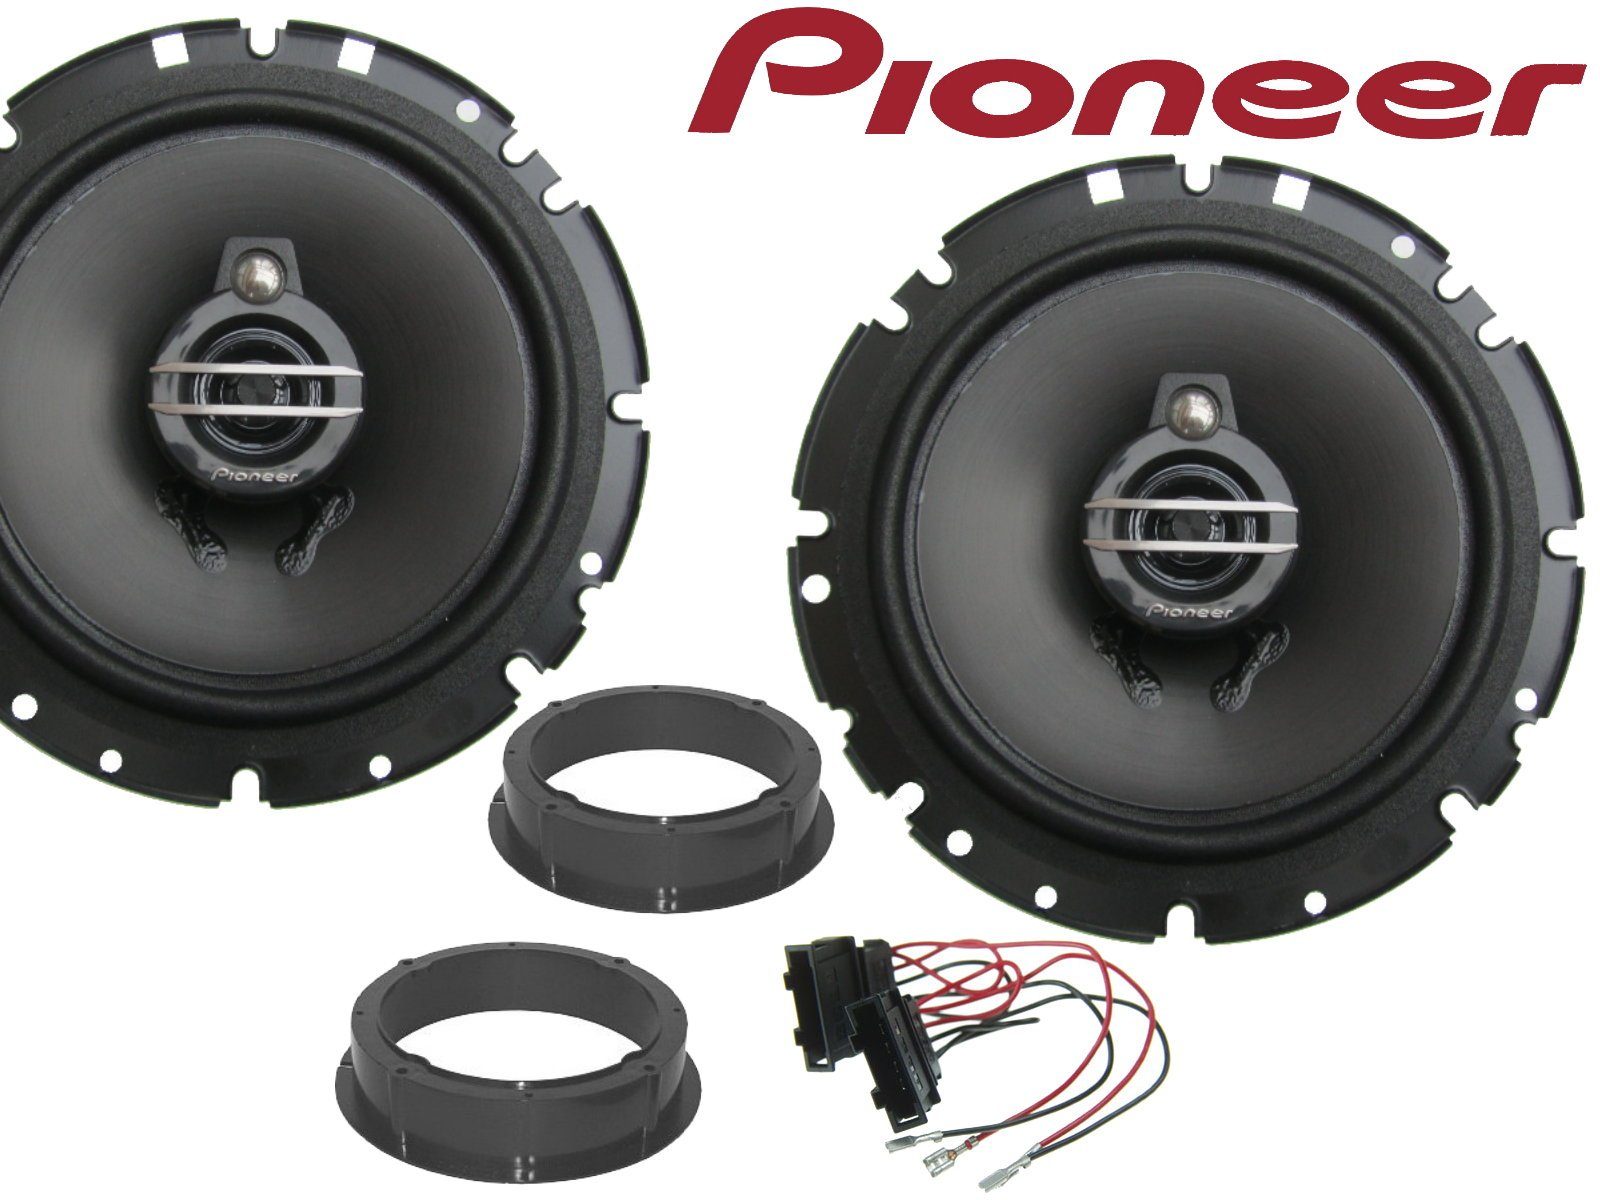 DSX Pioneer 3wege passend für Skoda Octavia 97- 04 Lau Auto-Lautsprecher  (40 W)